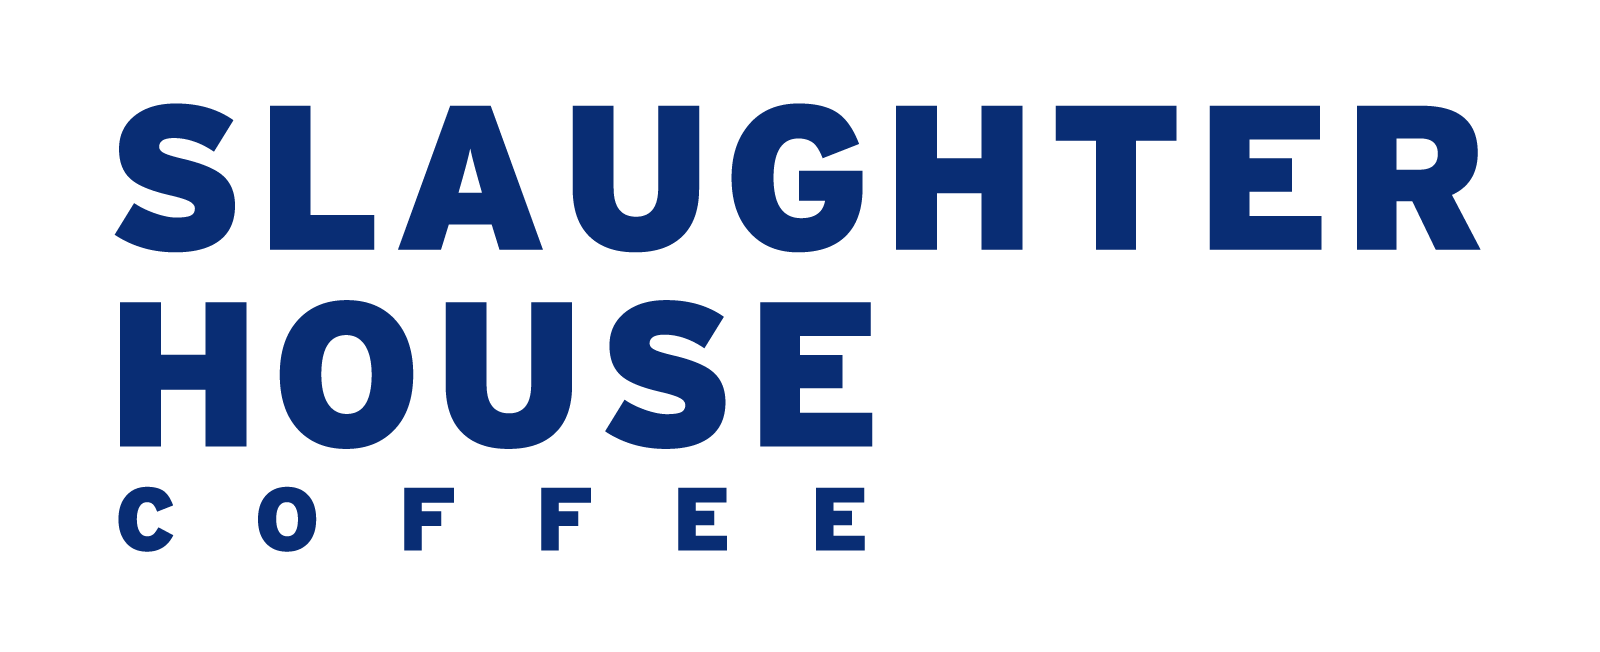 Slaughterhouse Typographic Logo